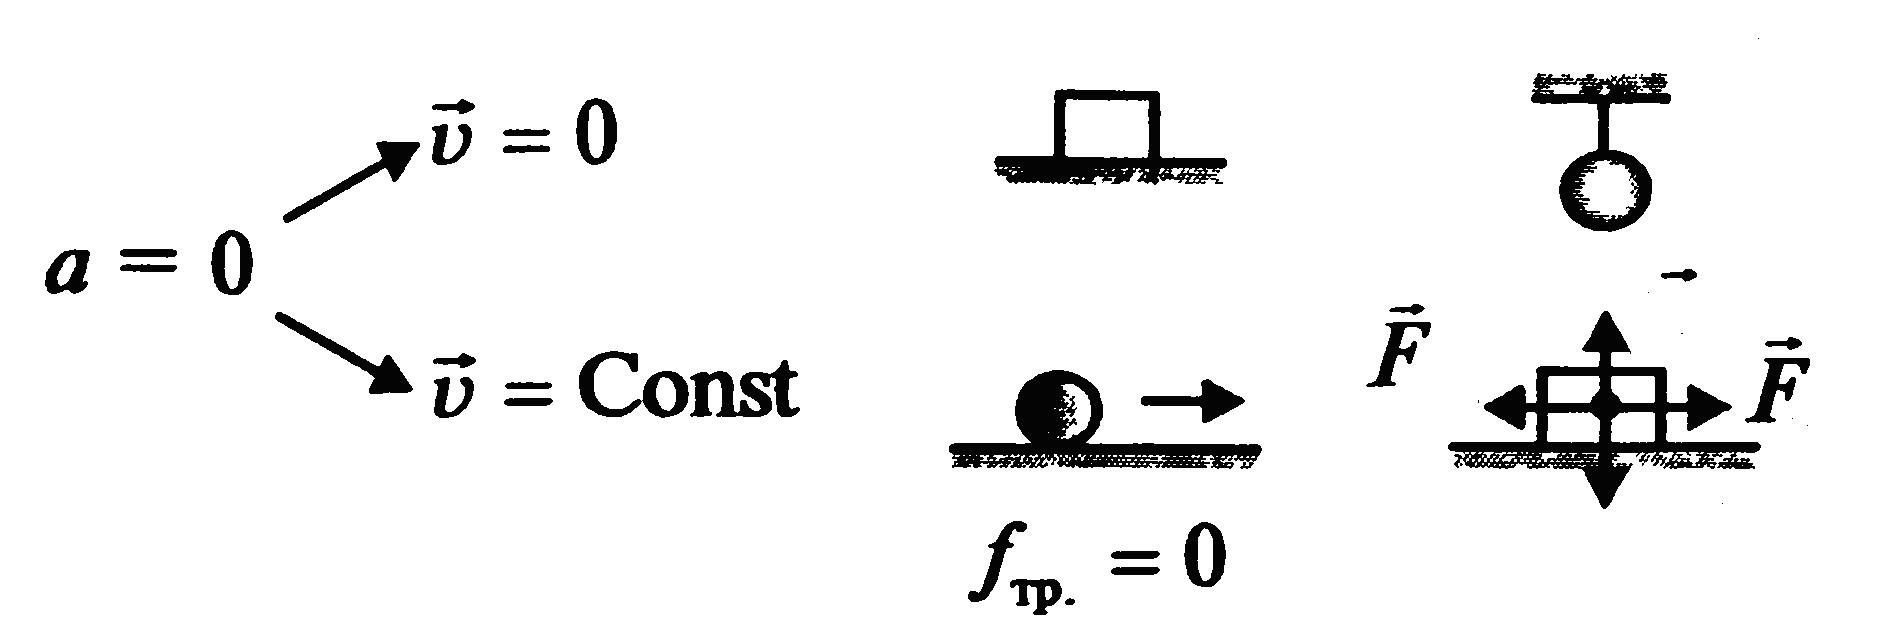 Законы Ньютона формулы